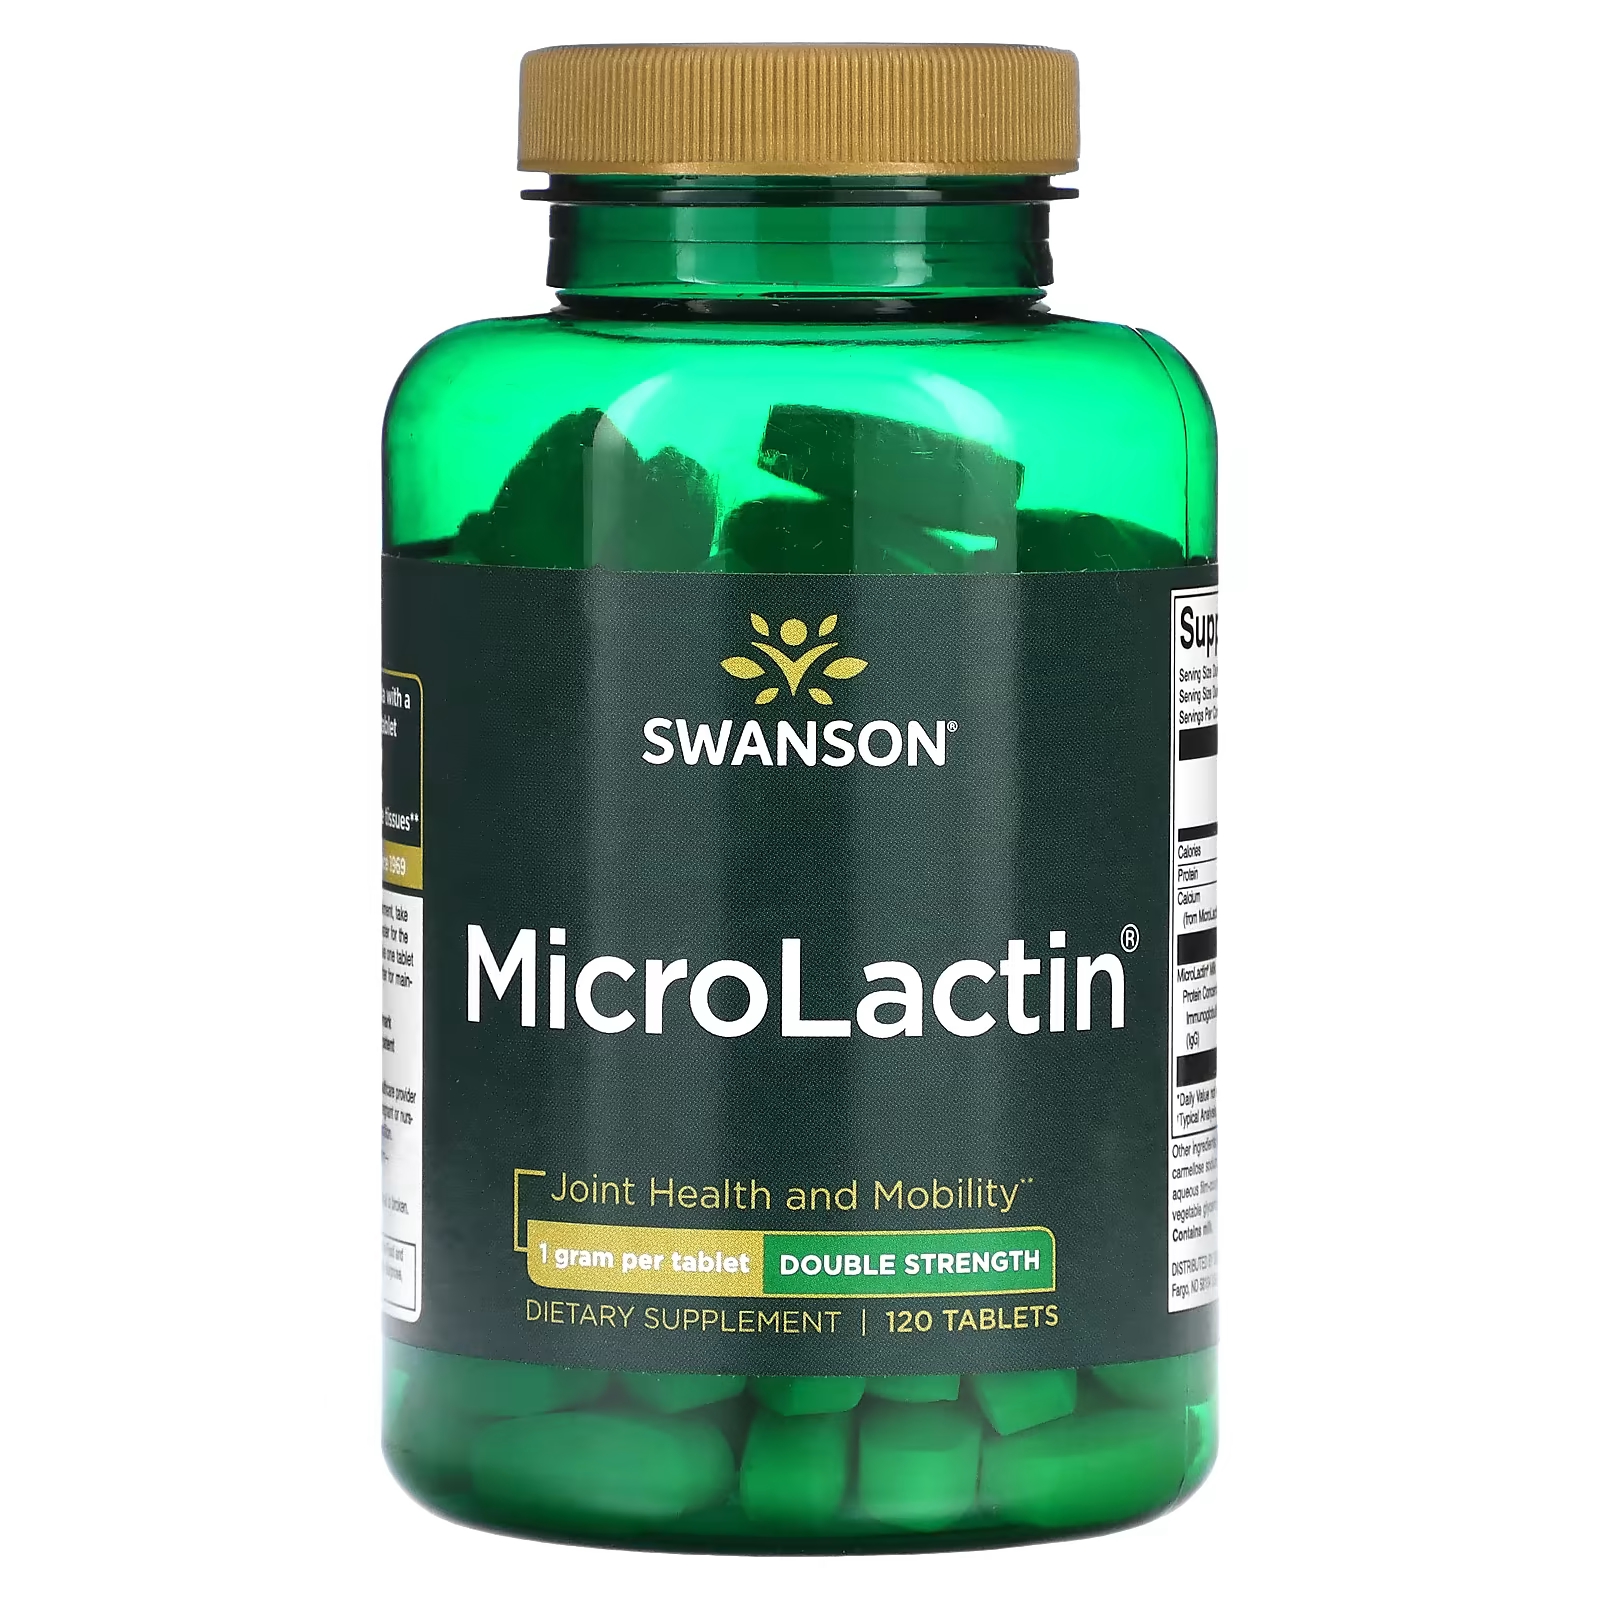 Пищевые добавки Swanson MicroLactin двойной силы, 120 таблеток омаров р сычева о шлыков с пищевые добавки